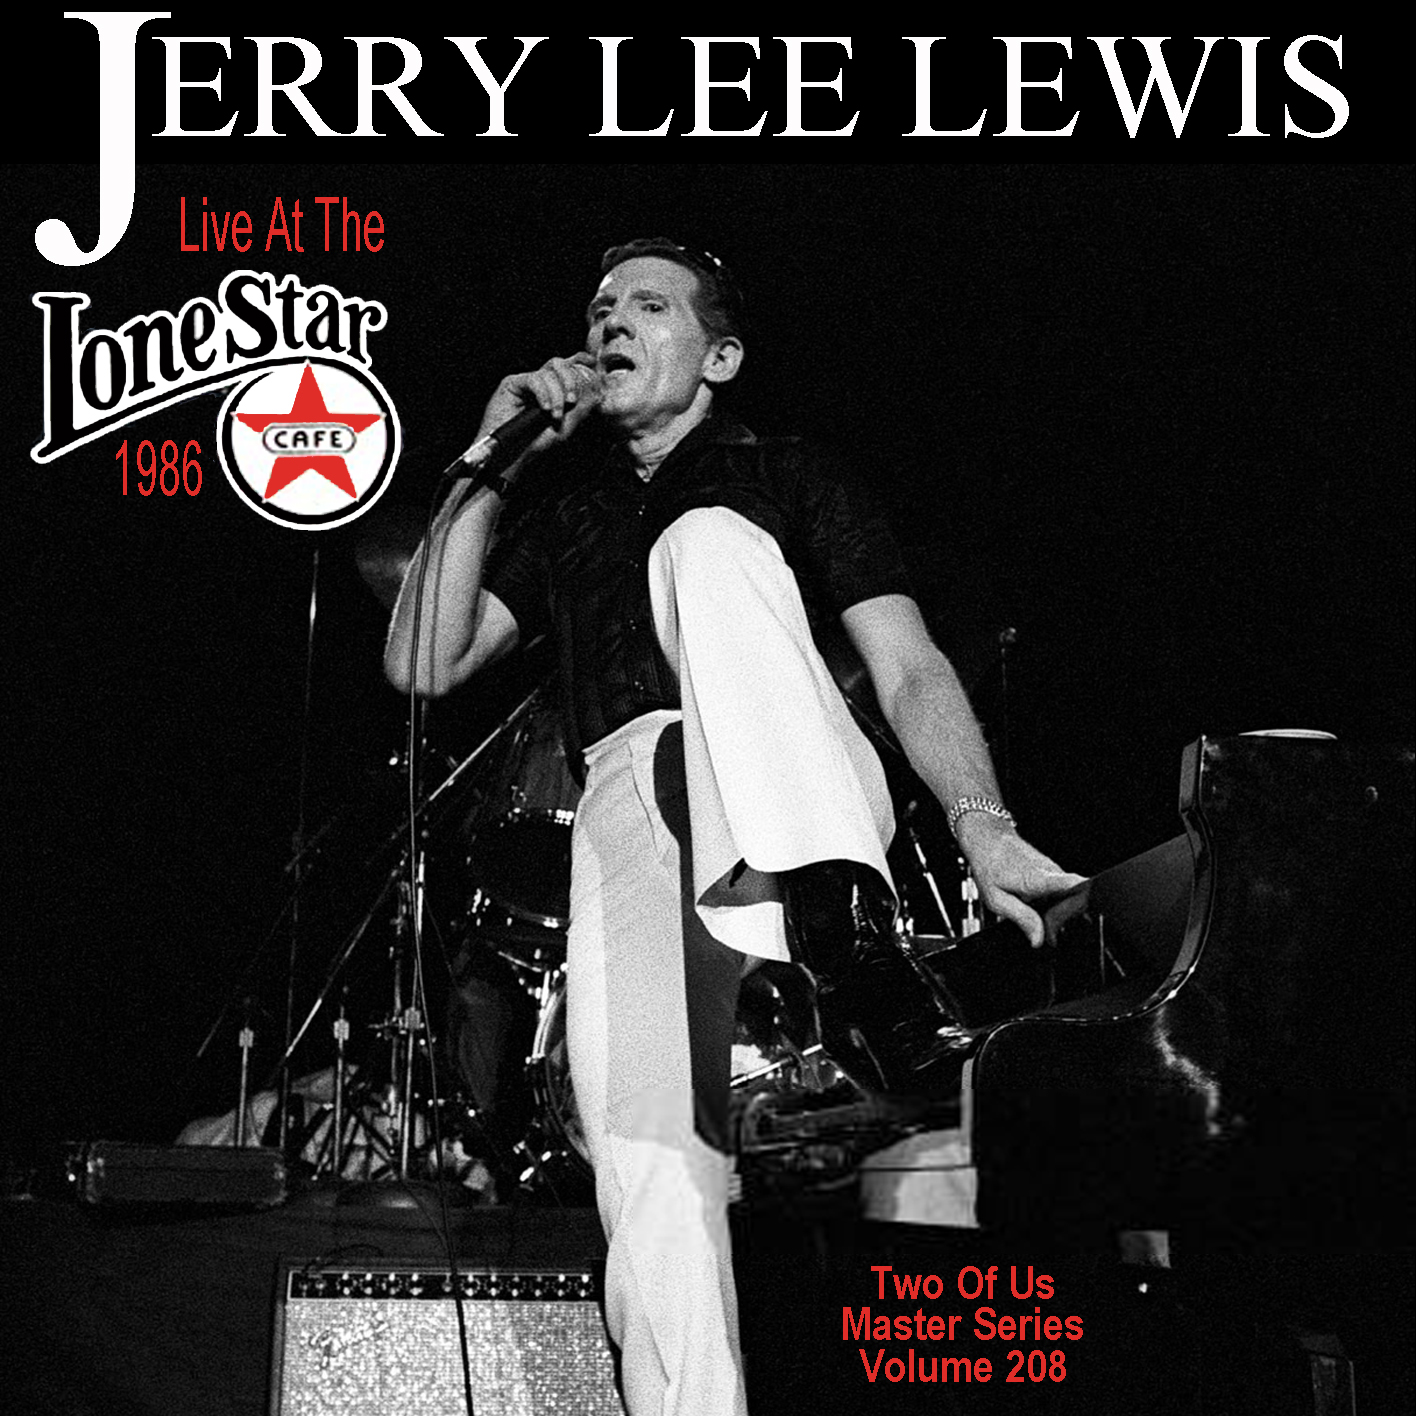 JerryLeeLewis1986-04-28LoneStarCafeNYC (3).jpg